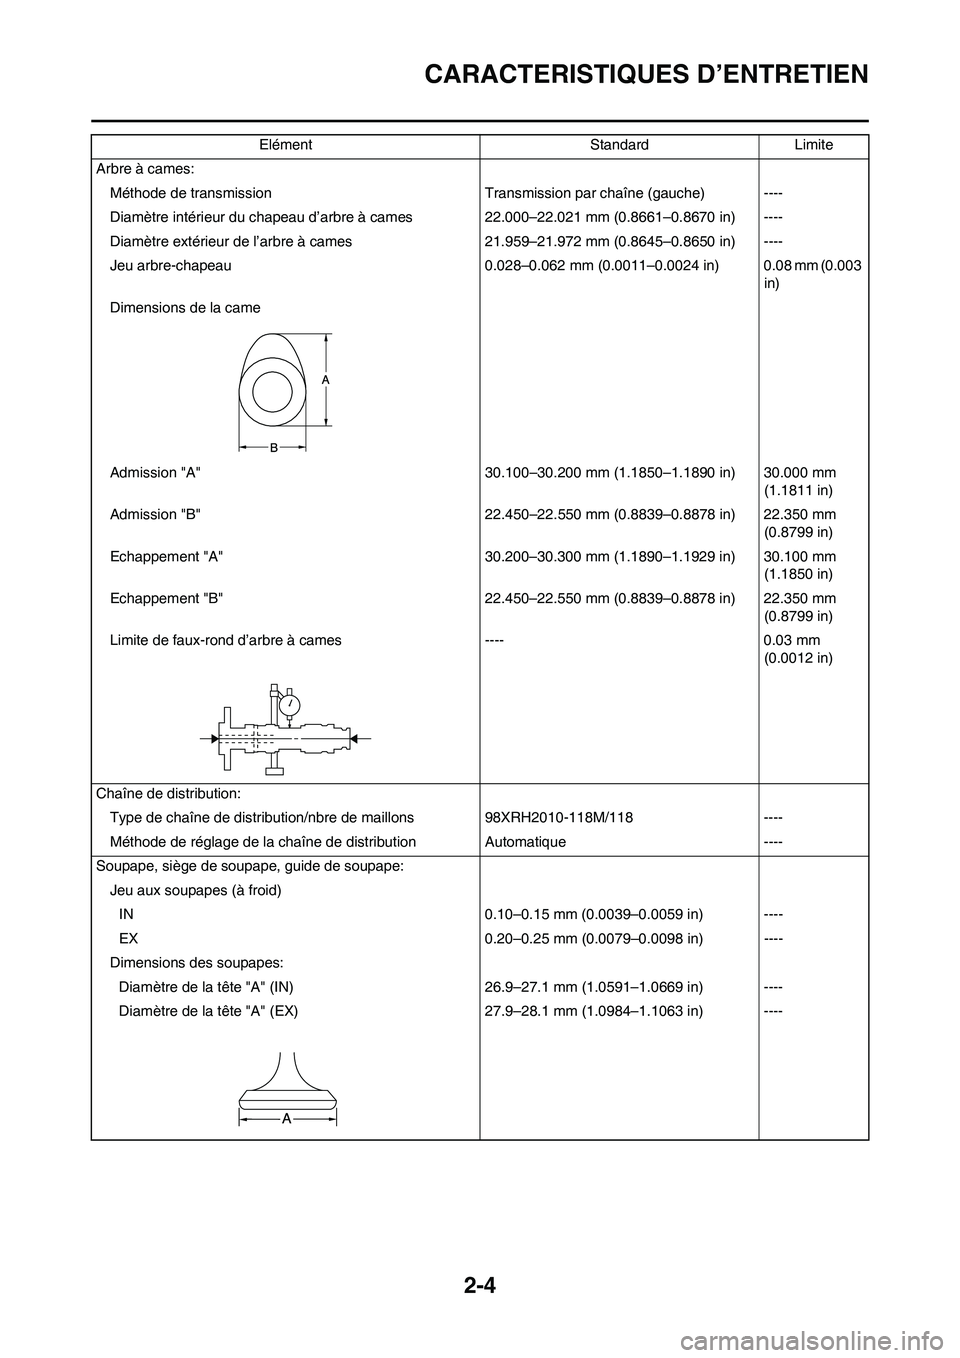 YAMAHA WR 450F 2008  Notices Demploi (in French) 2-4
CARACTERISTIQUES D’ENTRETIEN
Arbre à cames:
Méthode de transmission Transmission par chaîne (gauche) ----
Diamètre intérieur du chapeau d’arbre à cames 22.000–22.021 mm (0.8661–0.867